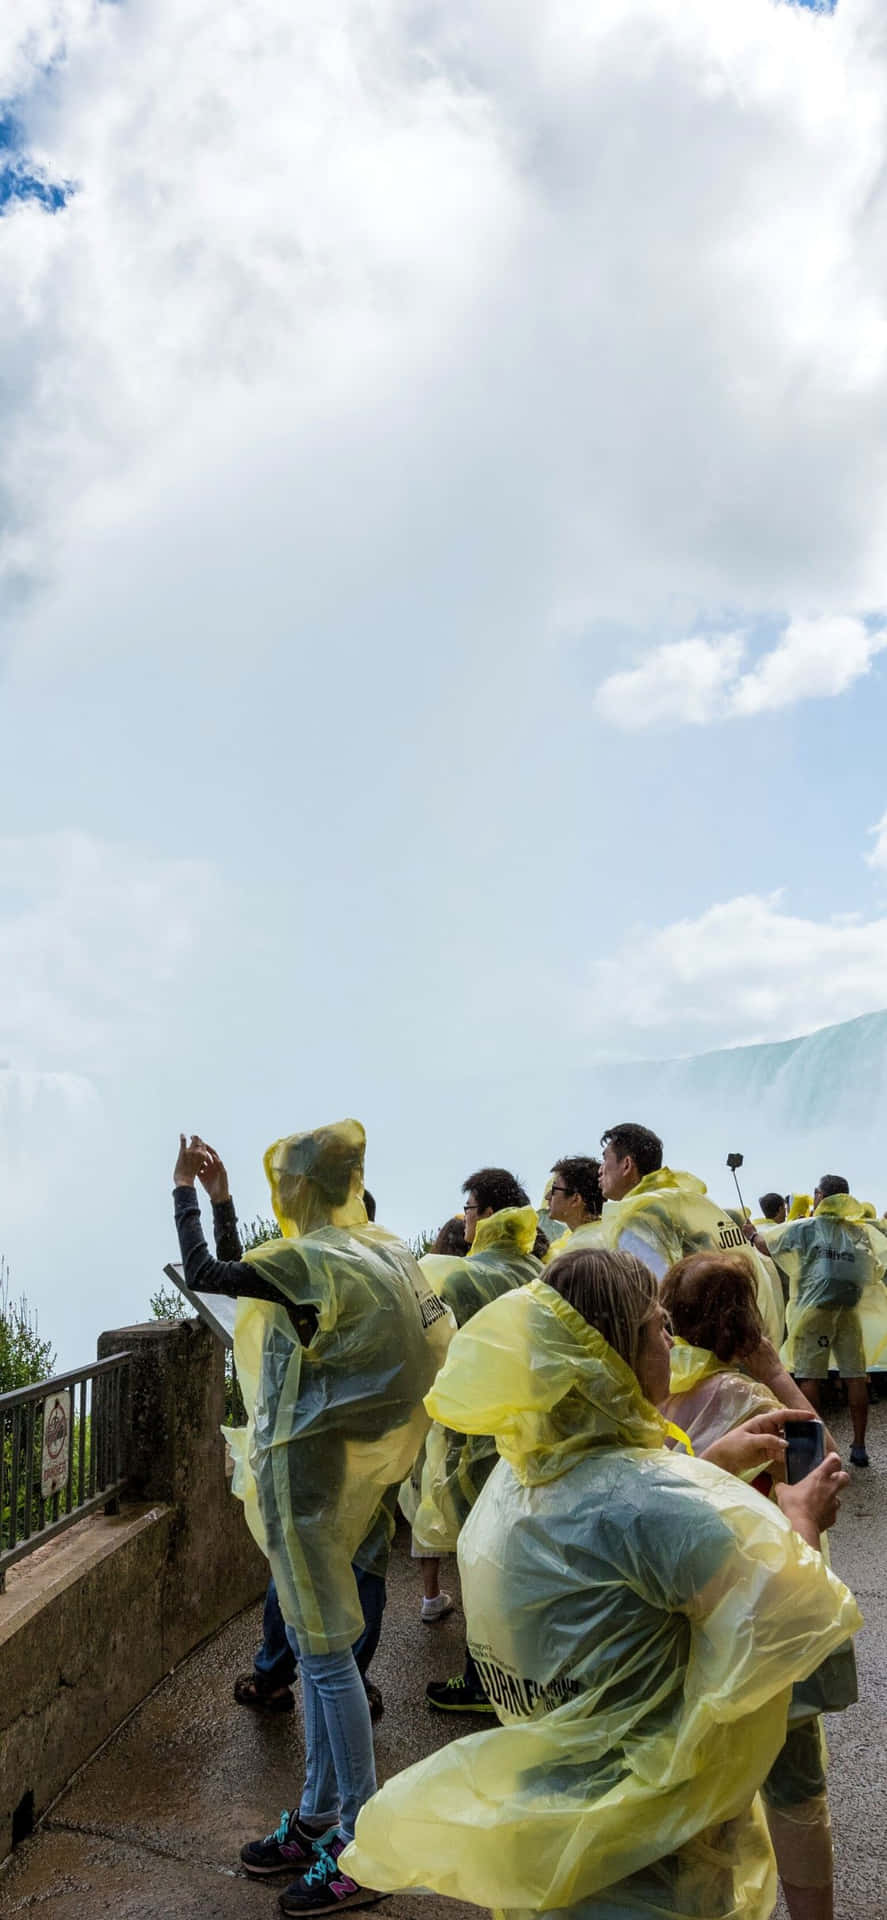 Iphonex Bakgrundsbild För Niagara Falls Som Visas För Turister.